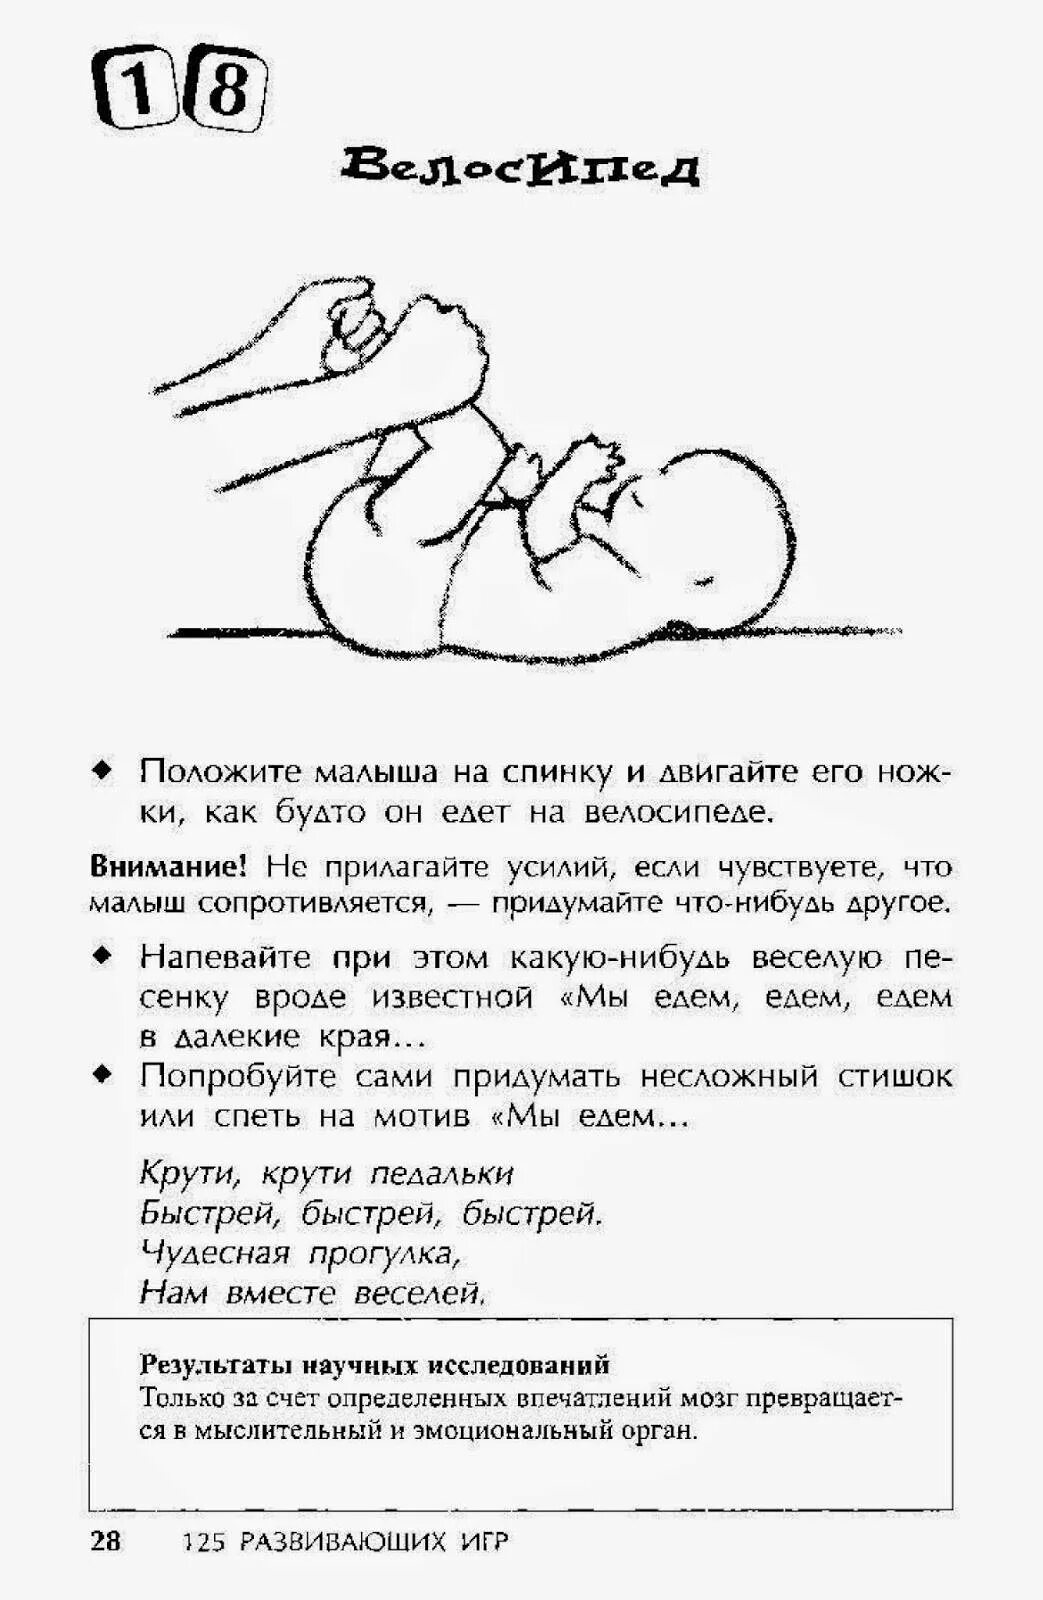 Как уложить ребенка 3 года. Как можно ребенка уложить спать. Укладываем ребёнка спать новорожденного. Уложить ребенка спать в 3 месяца. Как ложить ребенка в 3 месяца.